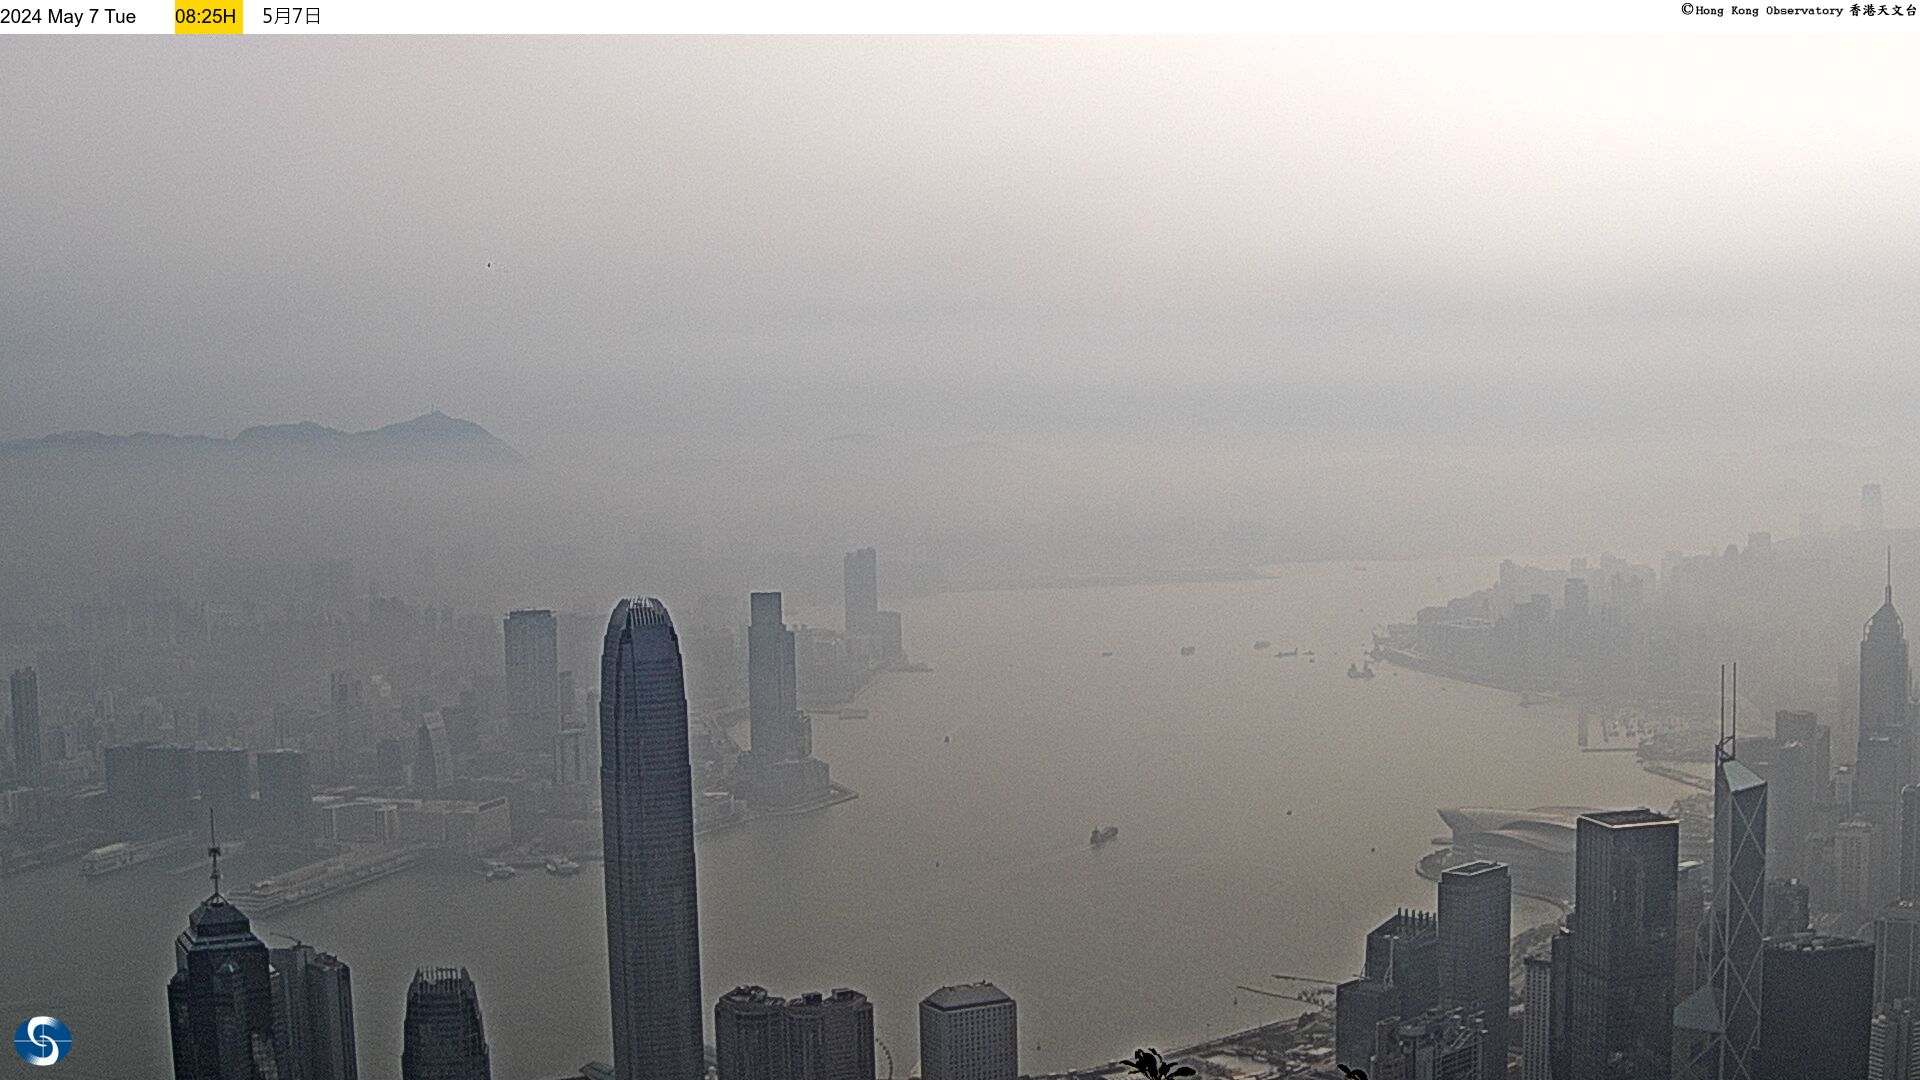 Hong Kong Sun. 08:35